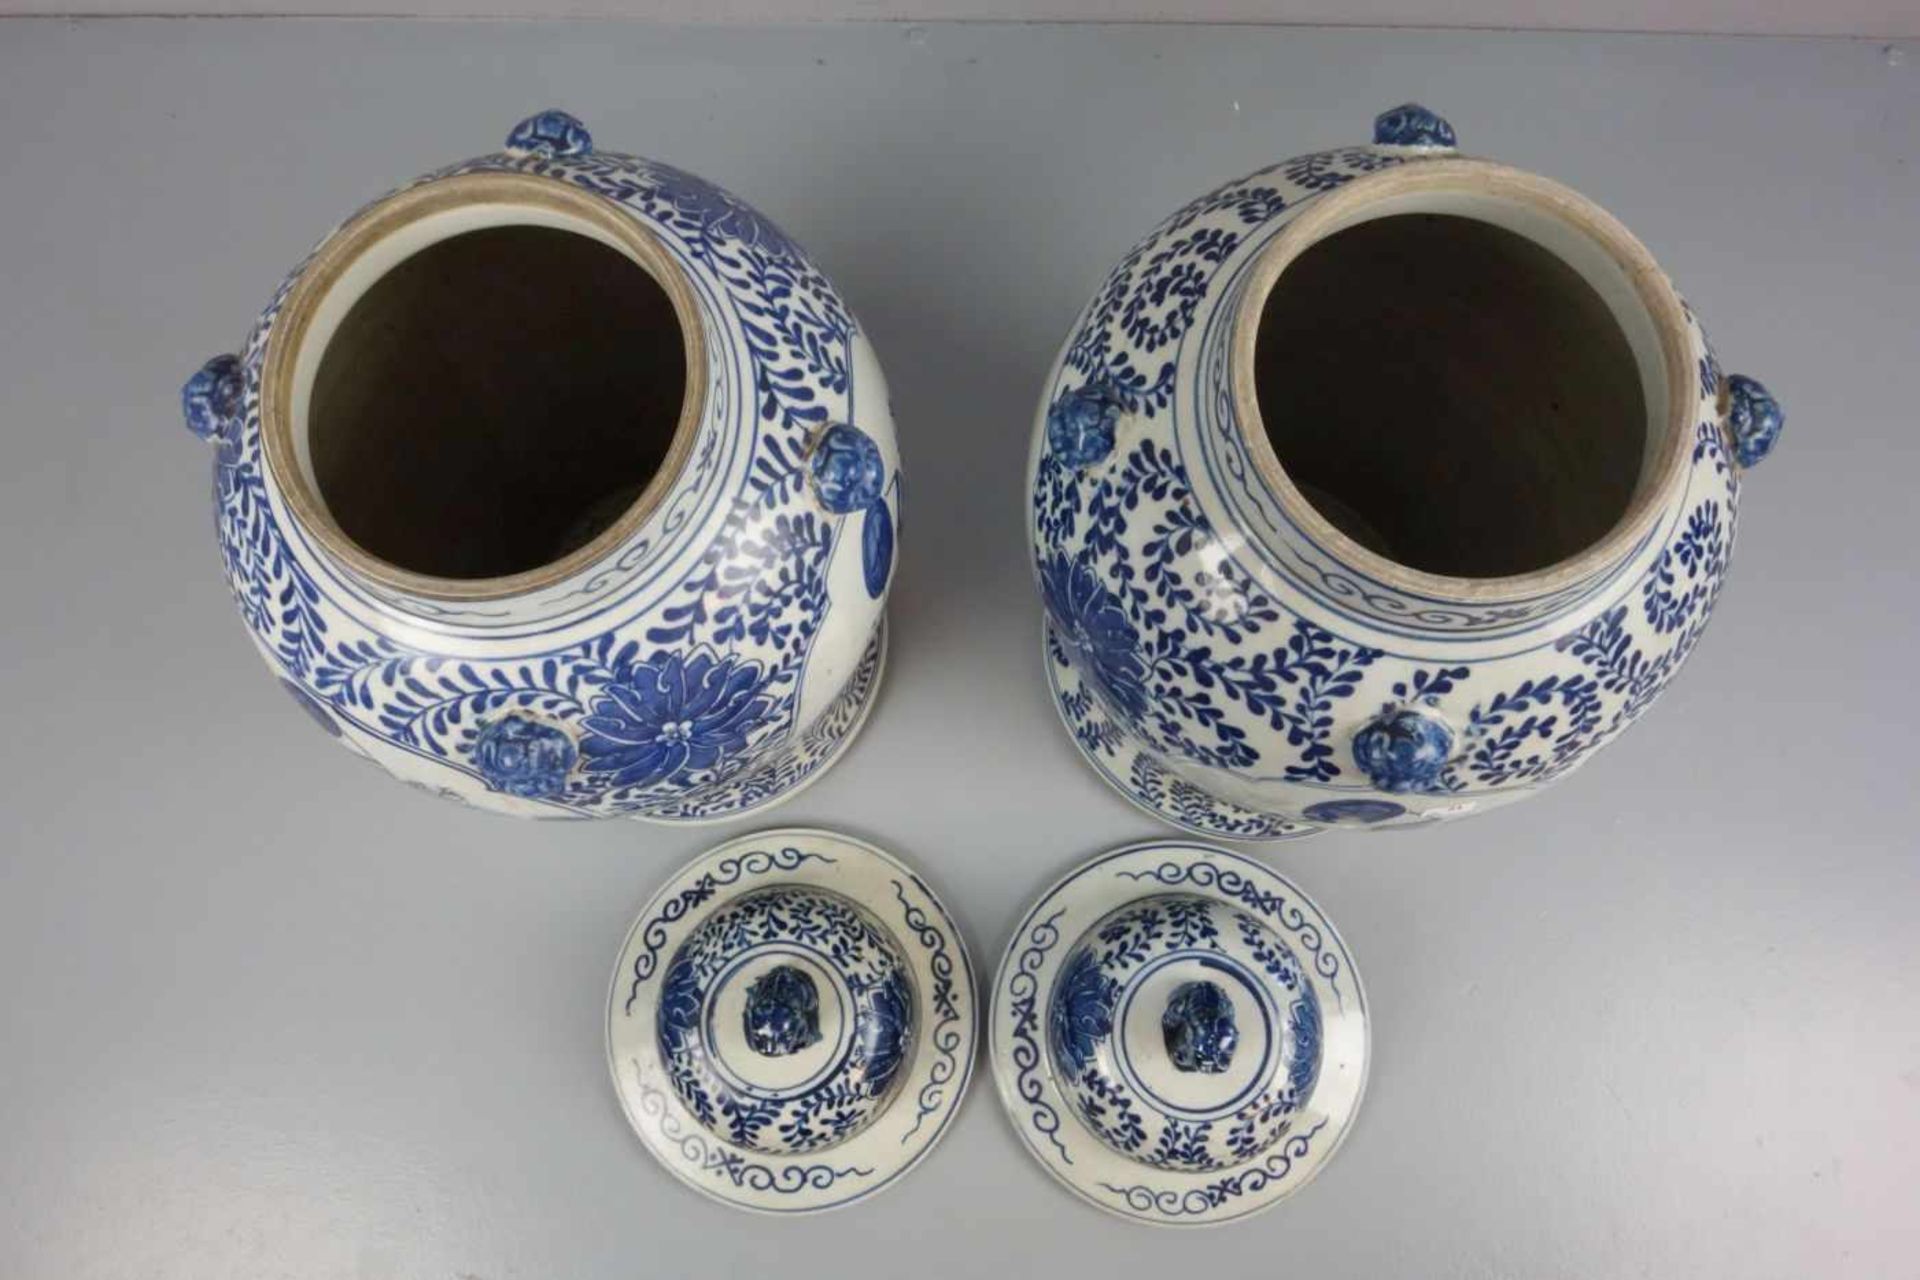 PAAR CHINESISCHE DECKELVASEN / pair of chinese vases, late Qing dynasty, Porzellan (ungemarkt), - Image 2 of 5